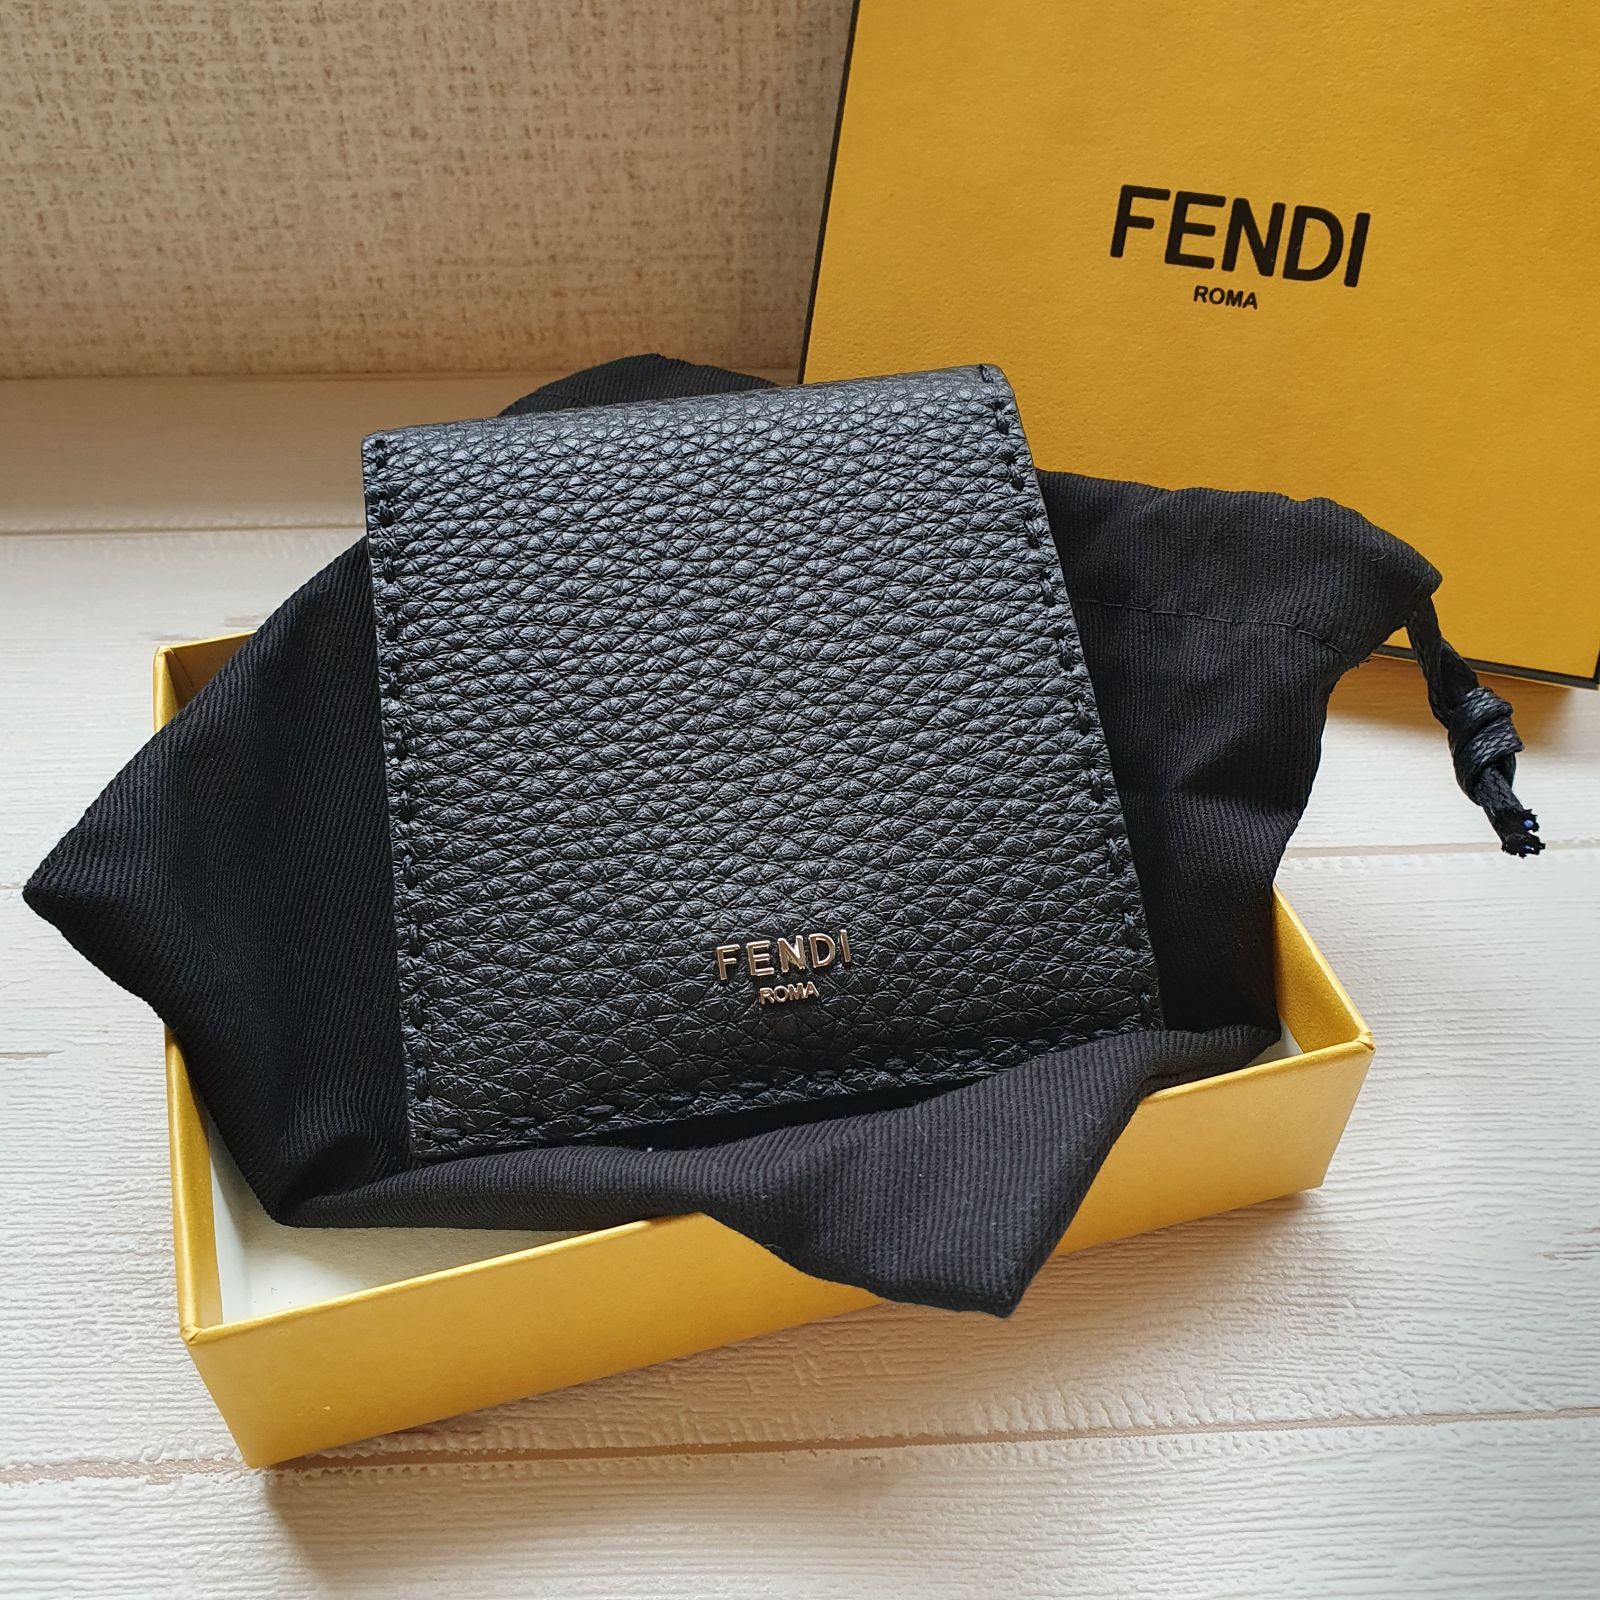 FENDI セレリアウォレット ブラックレザー二つ折り財布パラジウム仕上げの金属製品